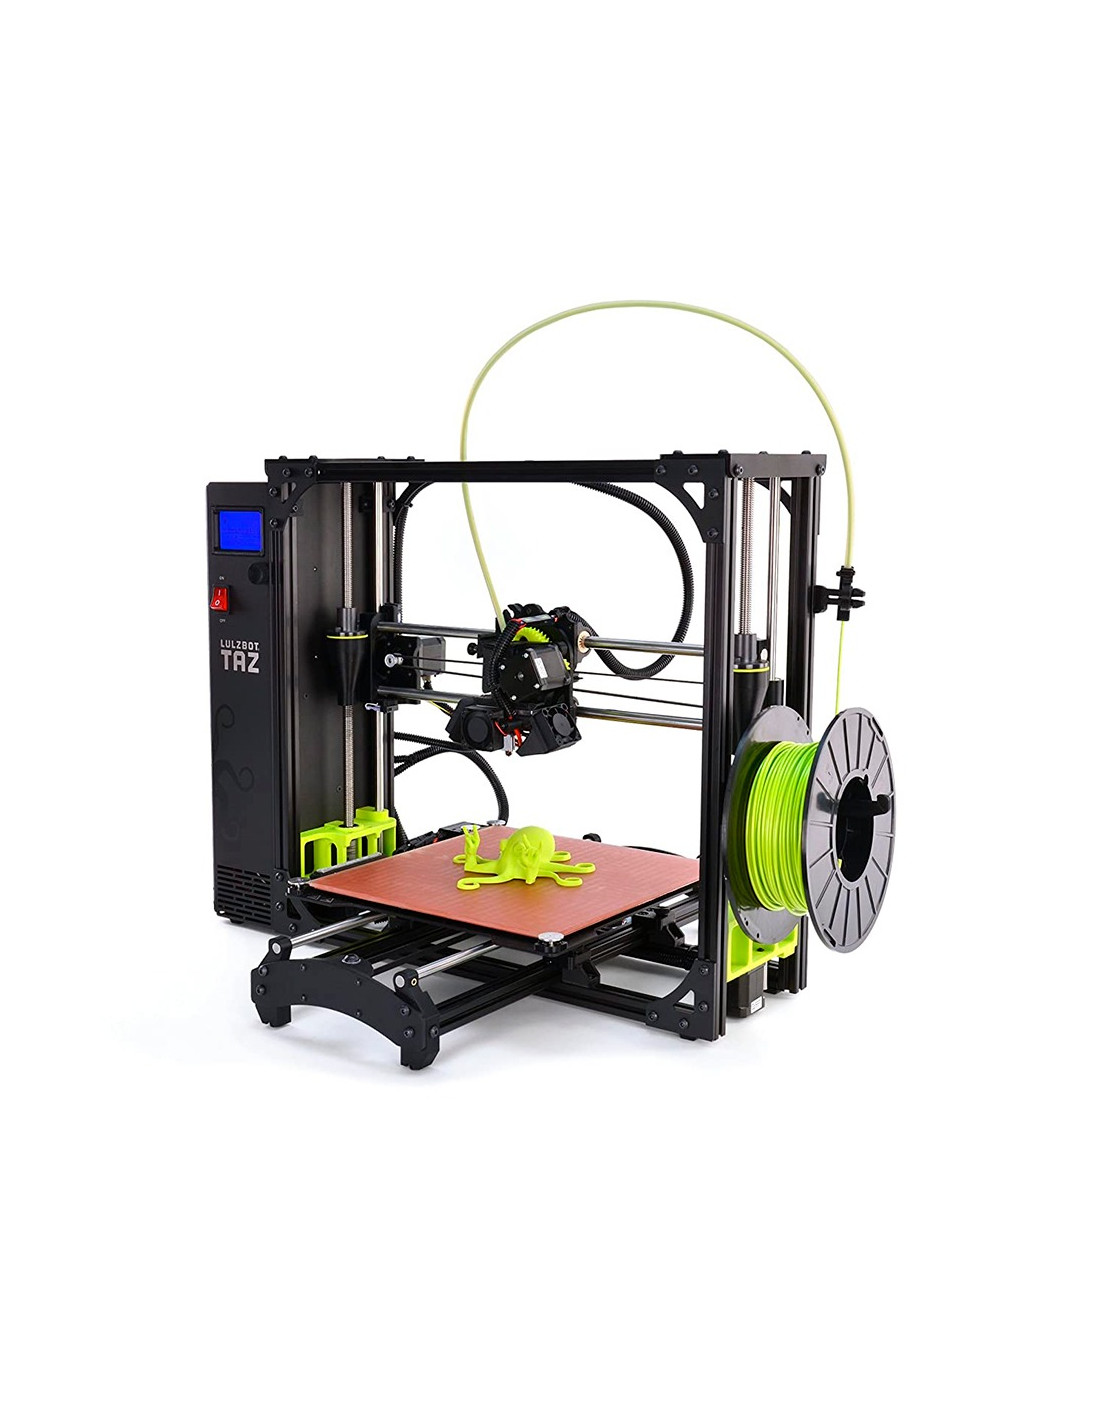 Impressora 3D LulzBot TAZ 6